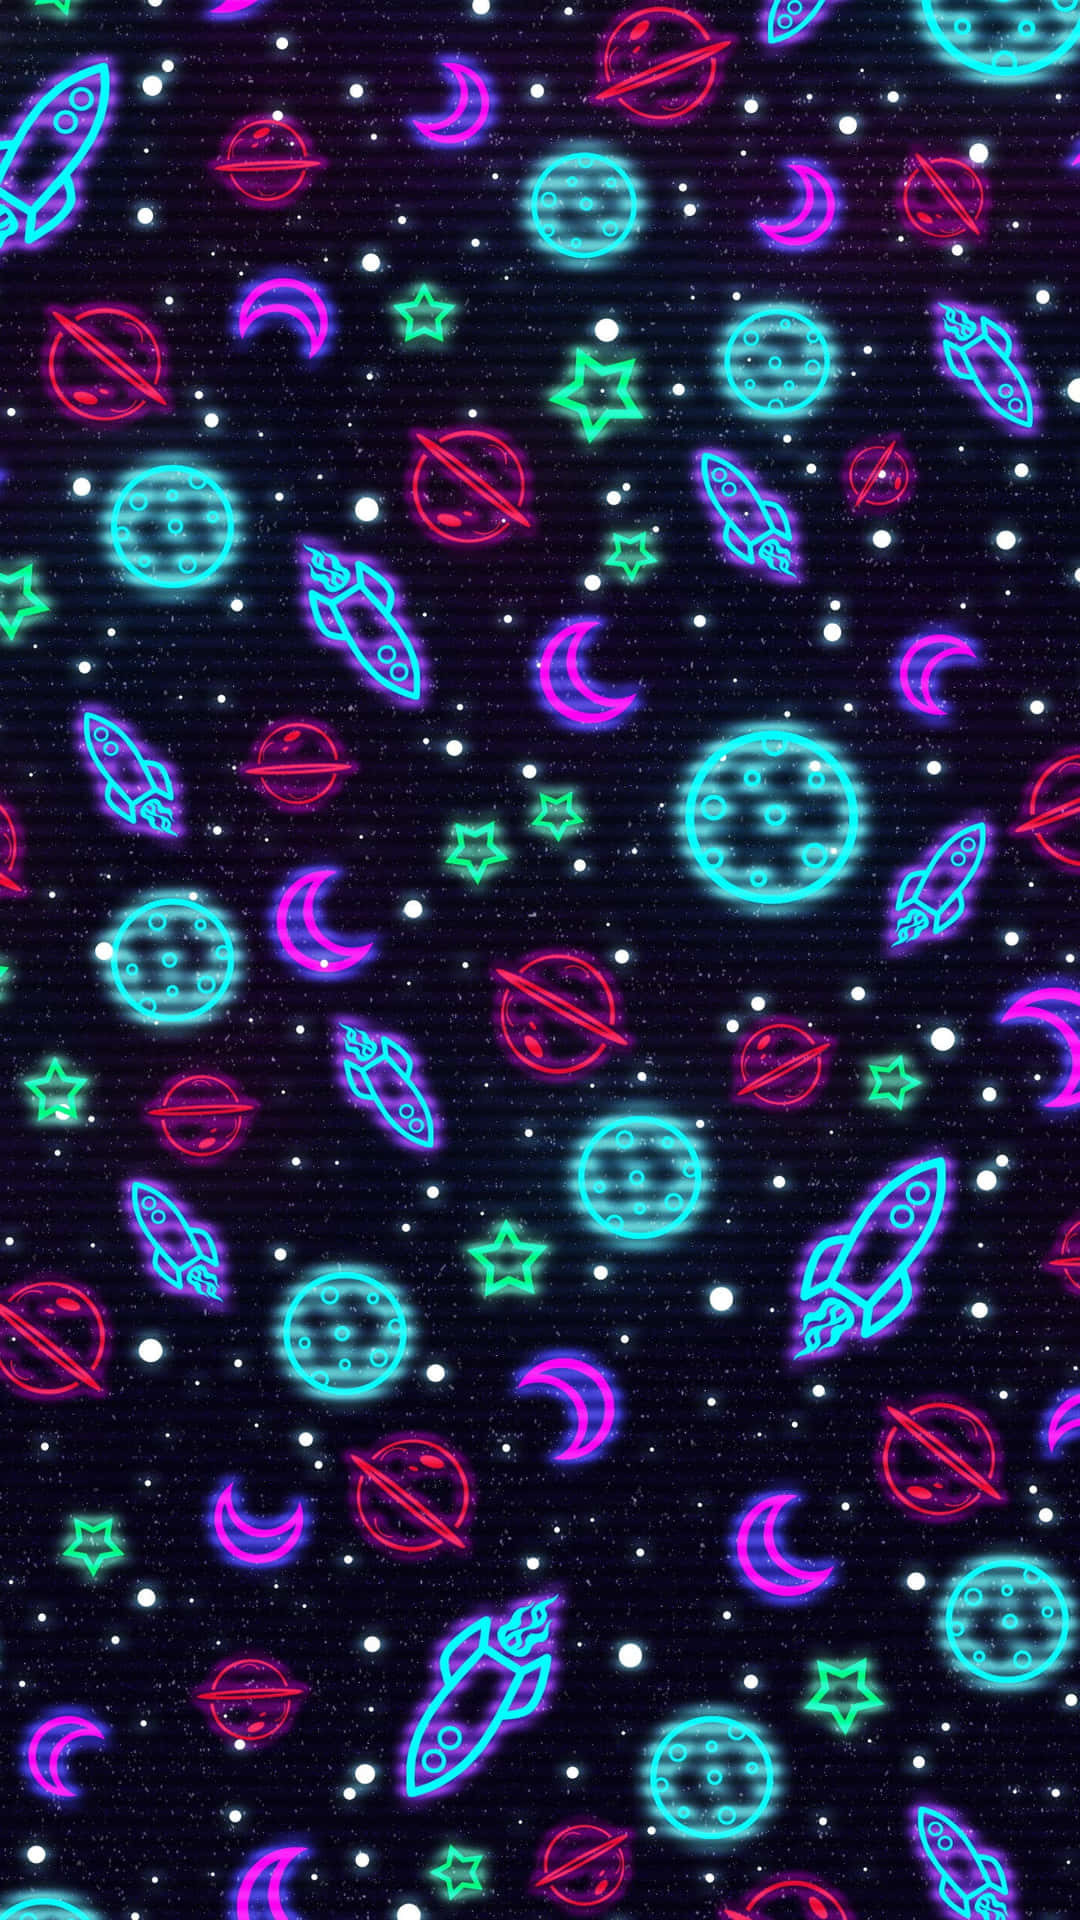 Entdeckedie Faszinierende Neon-galaxie Wallpaper